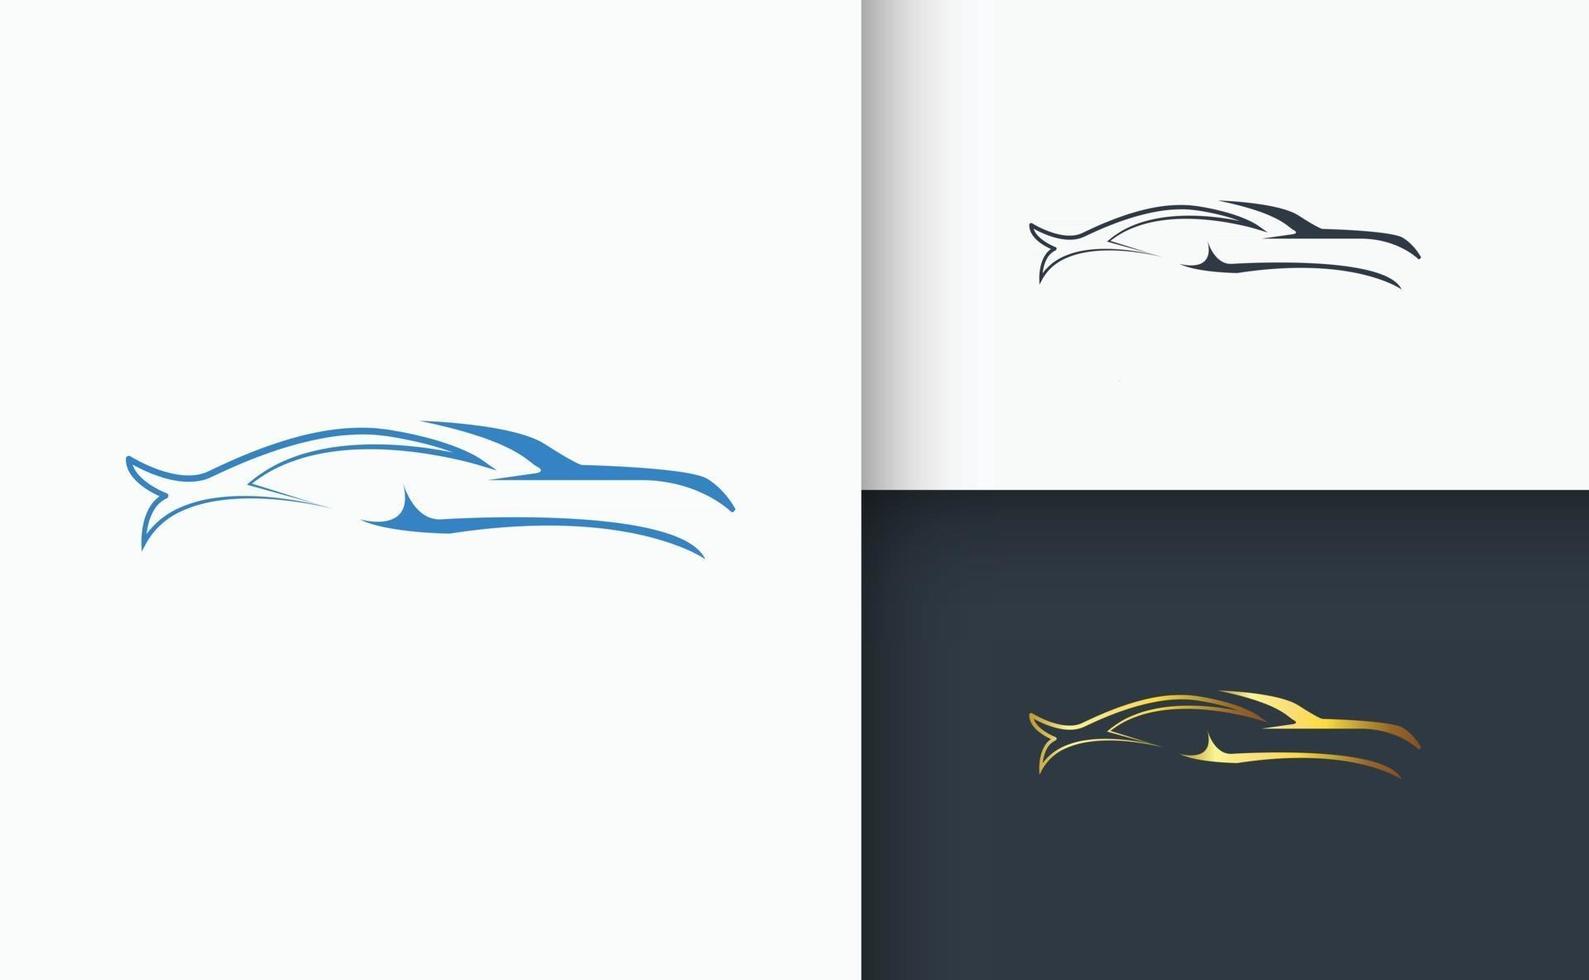 Car Logo design Template set vector